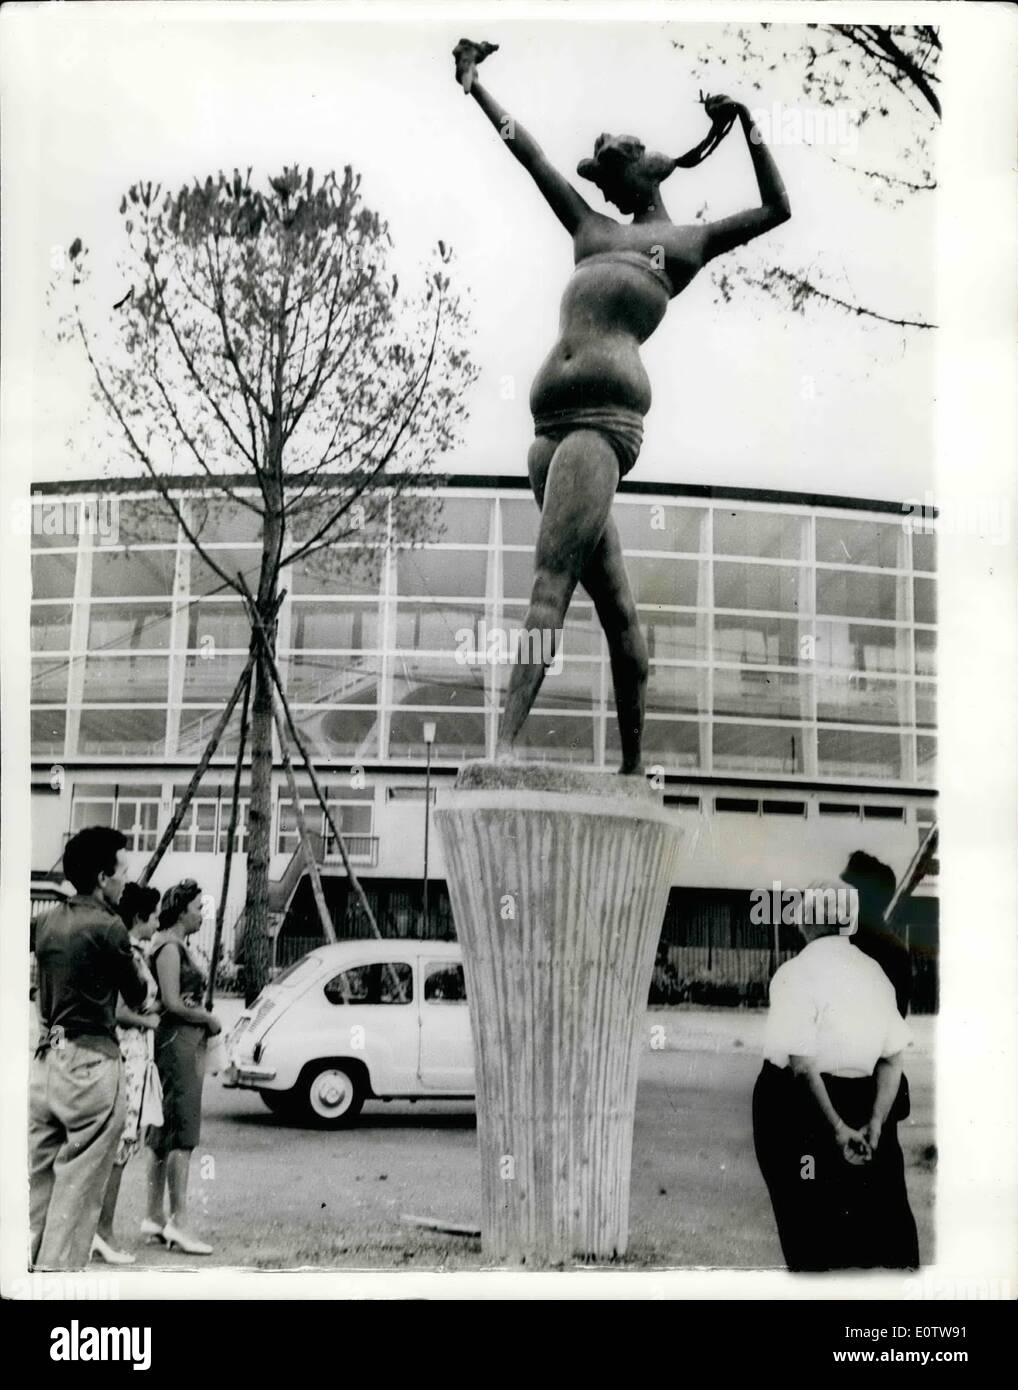 08 août 1960 - Rome est presque prêt pour le Th 1960 Jeux Olympiques ; photo montre la statue d'une figure tenant le flambeau olympique, par le sculpteur Grace, qui a été érigée devant la Palais des Sports. Banque D'Images